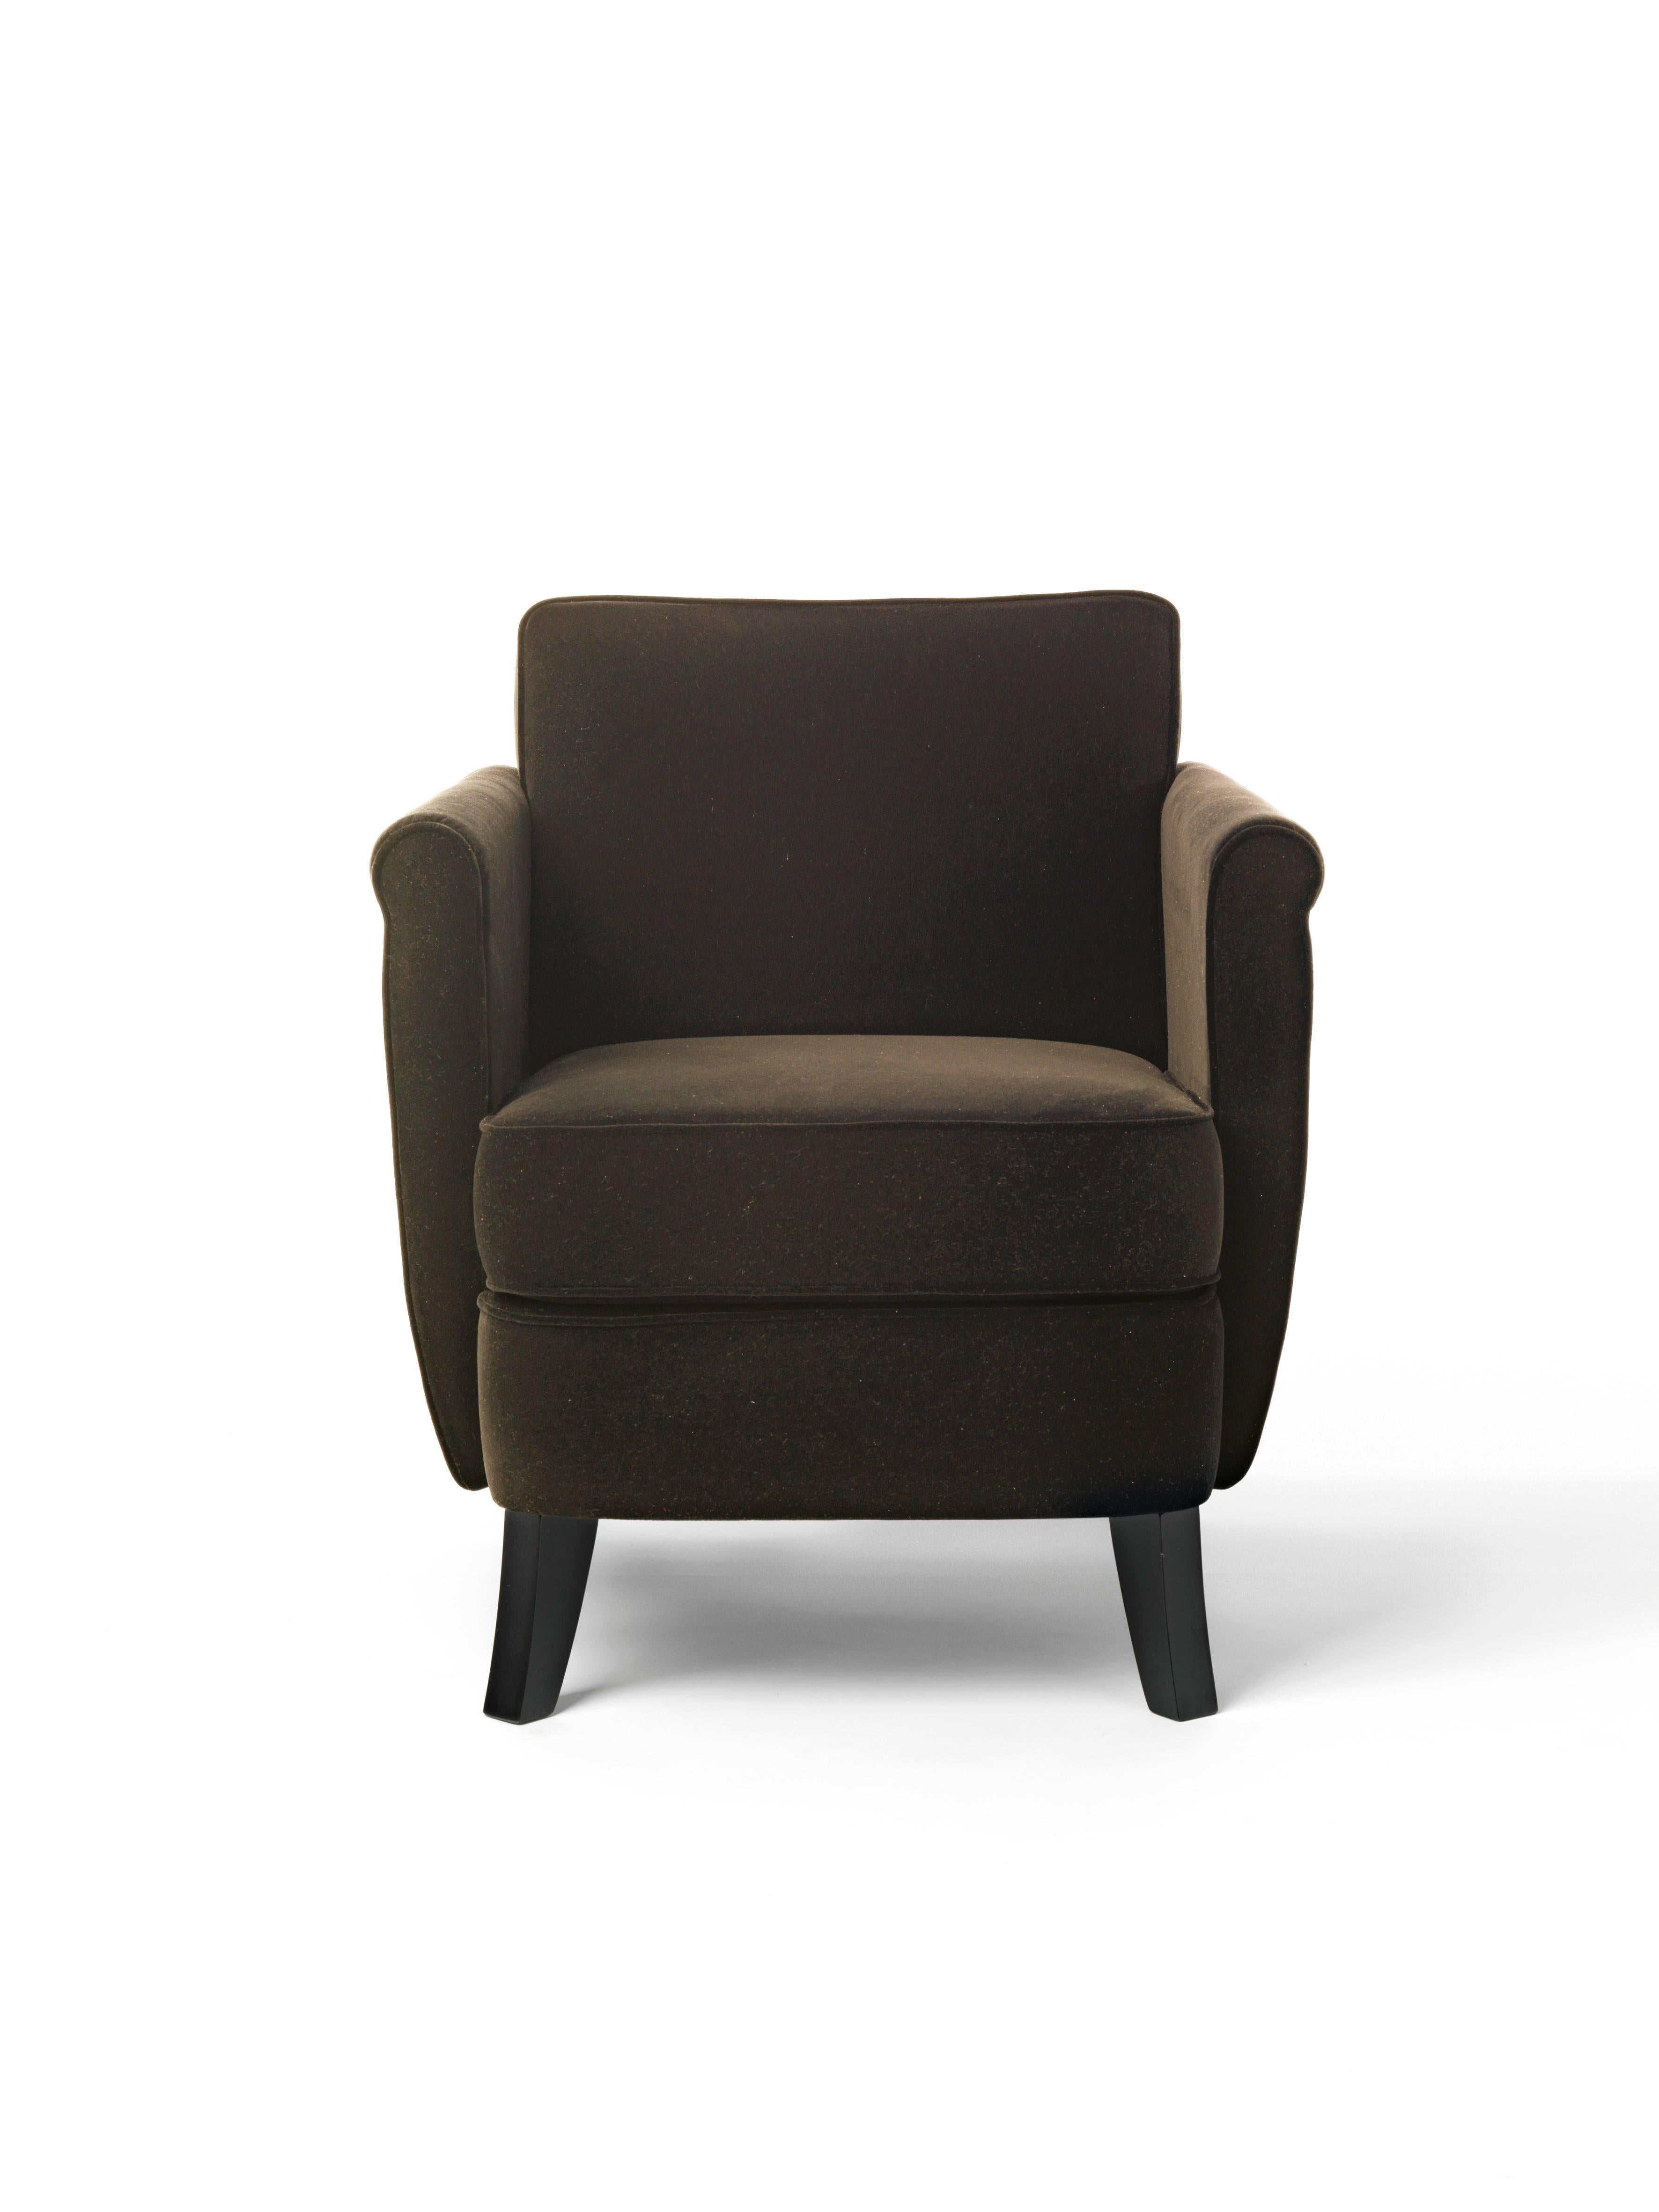 Modern Baleri Italia Undersized Armchair in Brown Leather For Sale